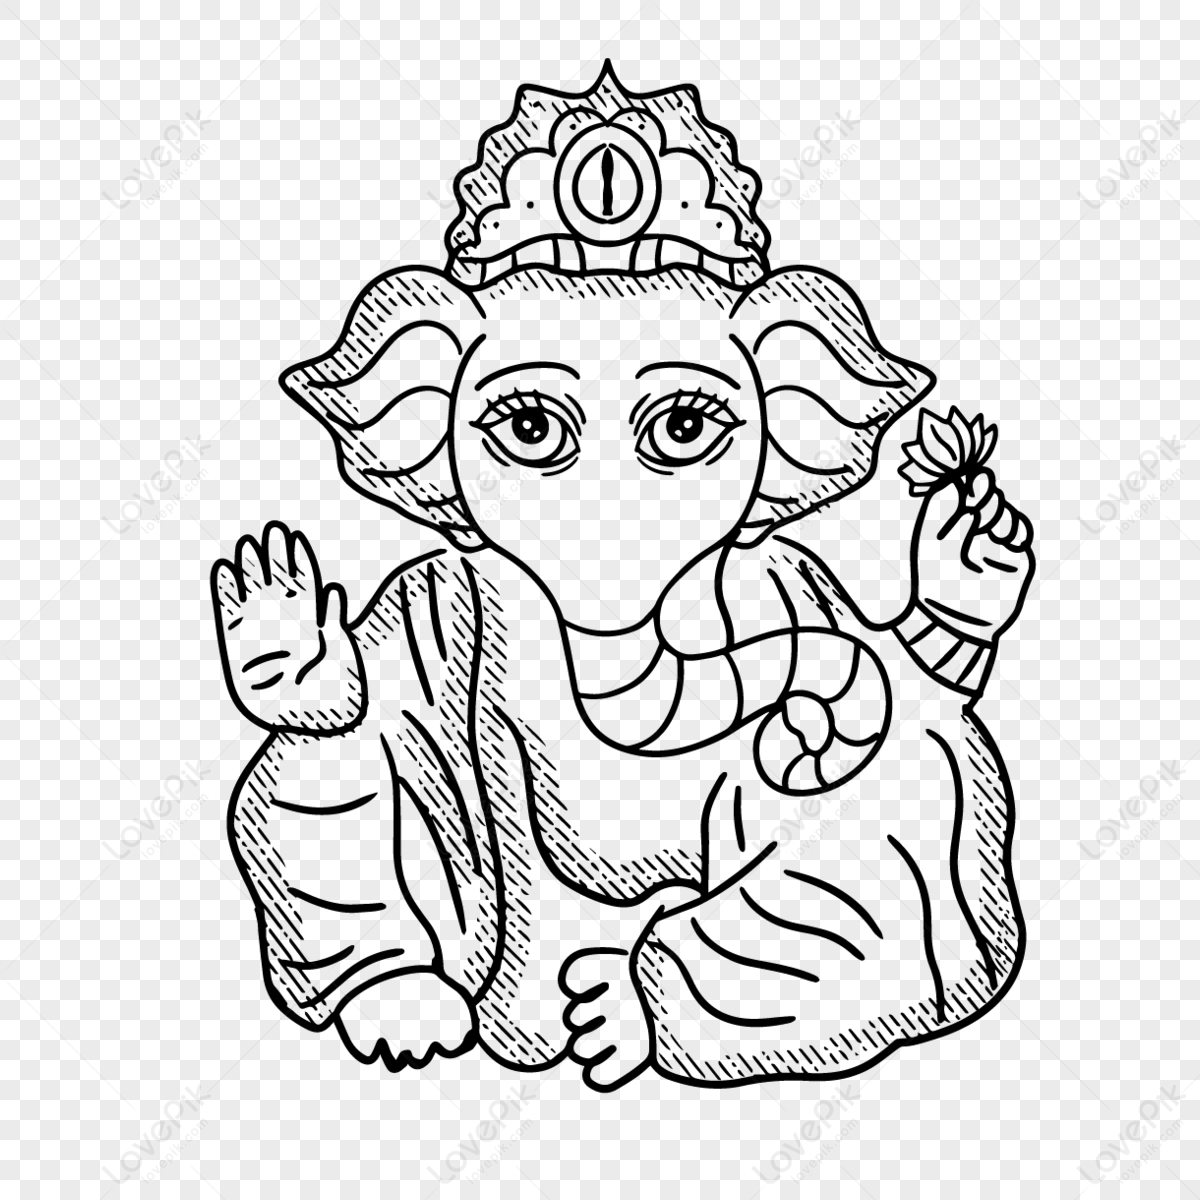 Hand Drawn Cartoon Indian Ganesh Chaturthi Elephant God Illustration ...